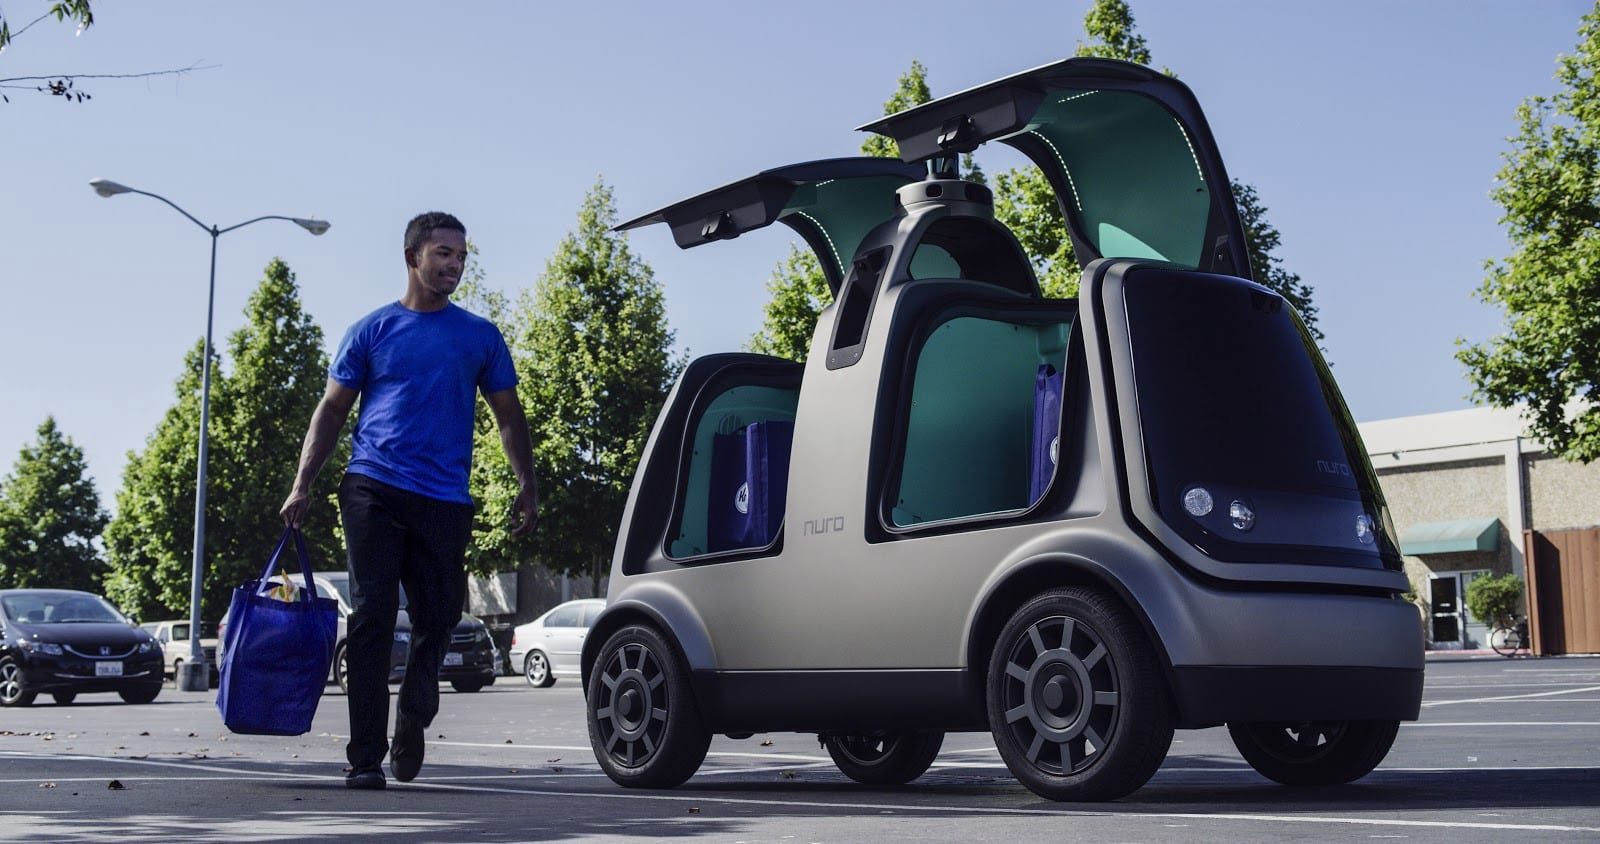 Servicio delivery con robots ya es una realidad en California